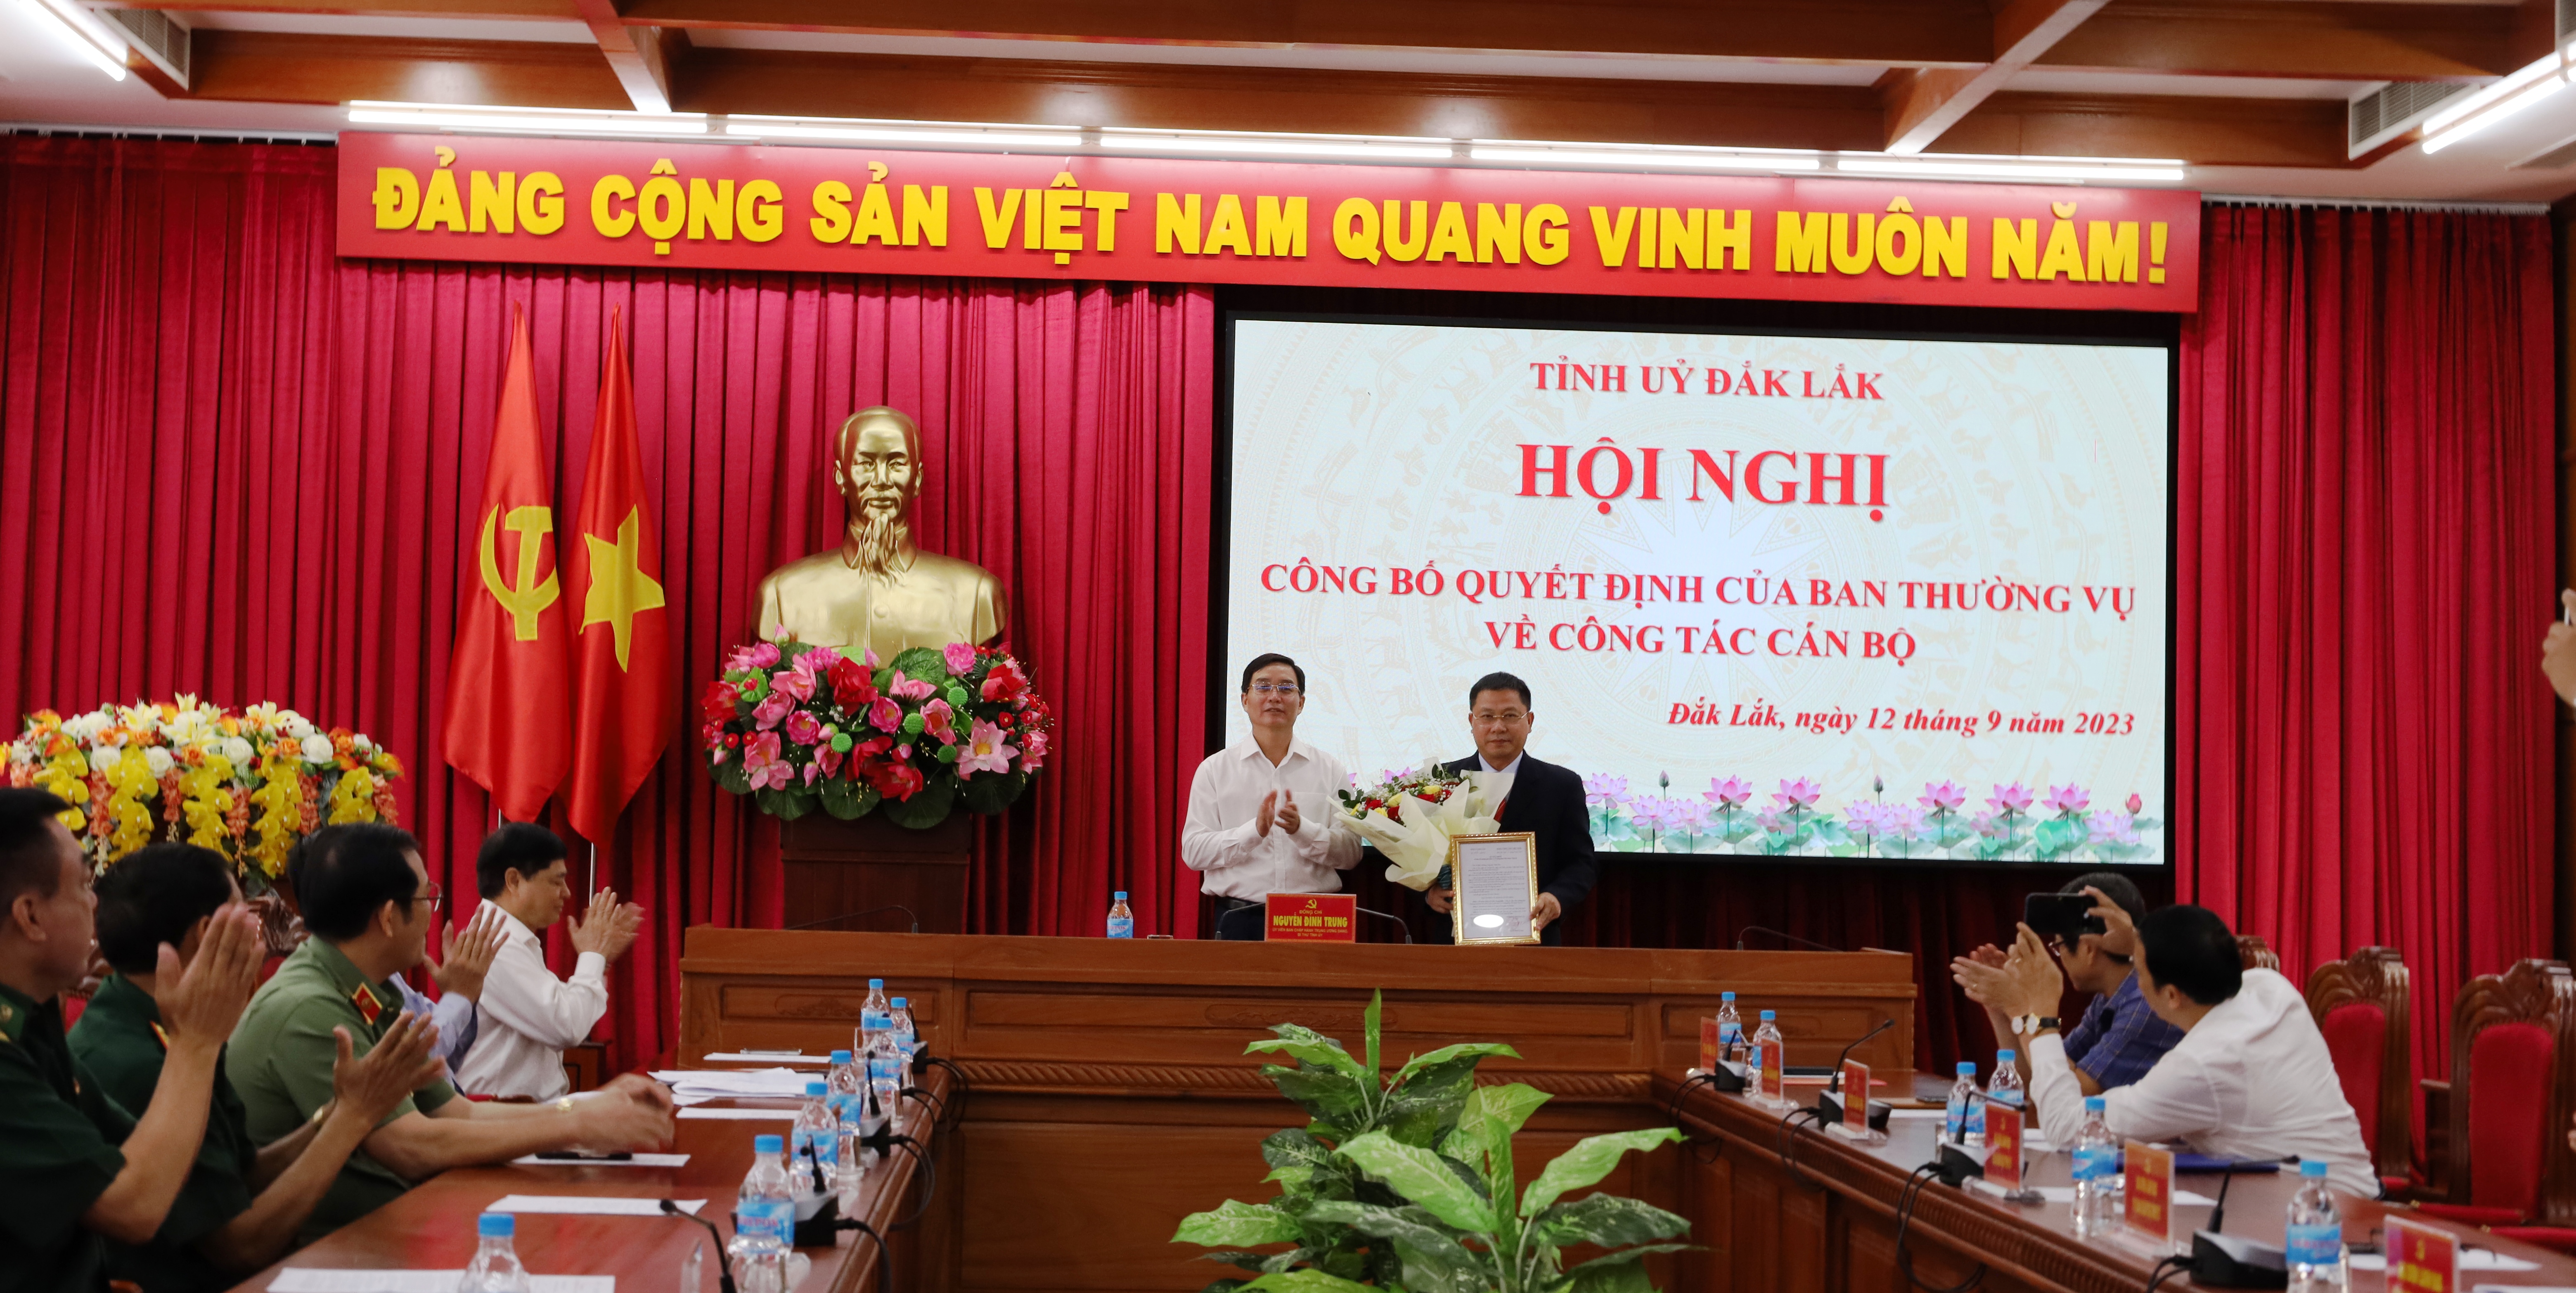 Đồng chí Trần Trung Hiển giữ chức Trưởng Ban Nội chính Tỉnh ủy Đắk Lắk